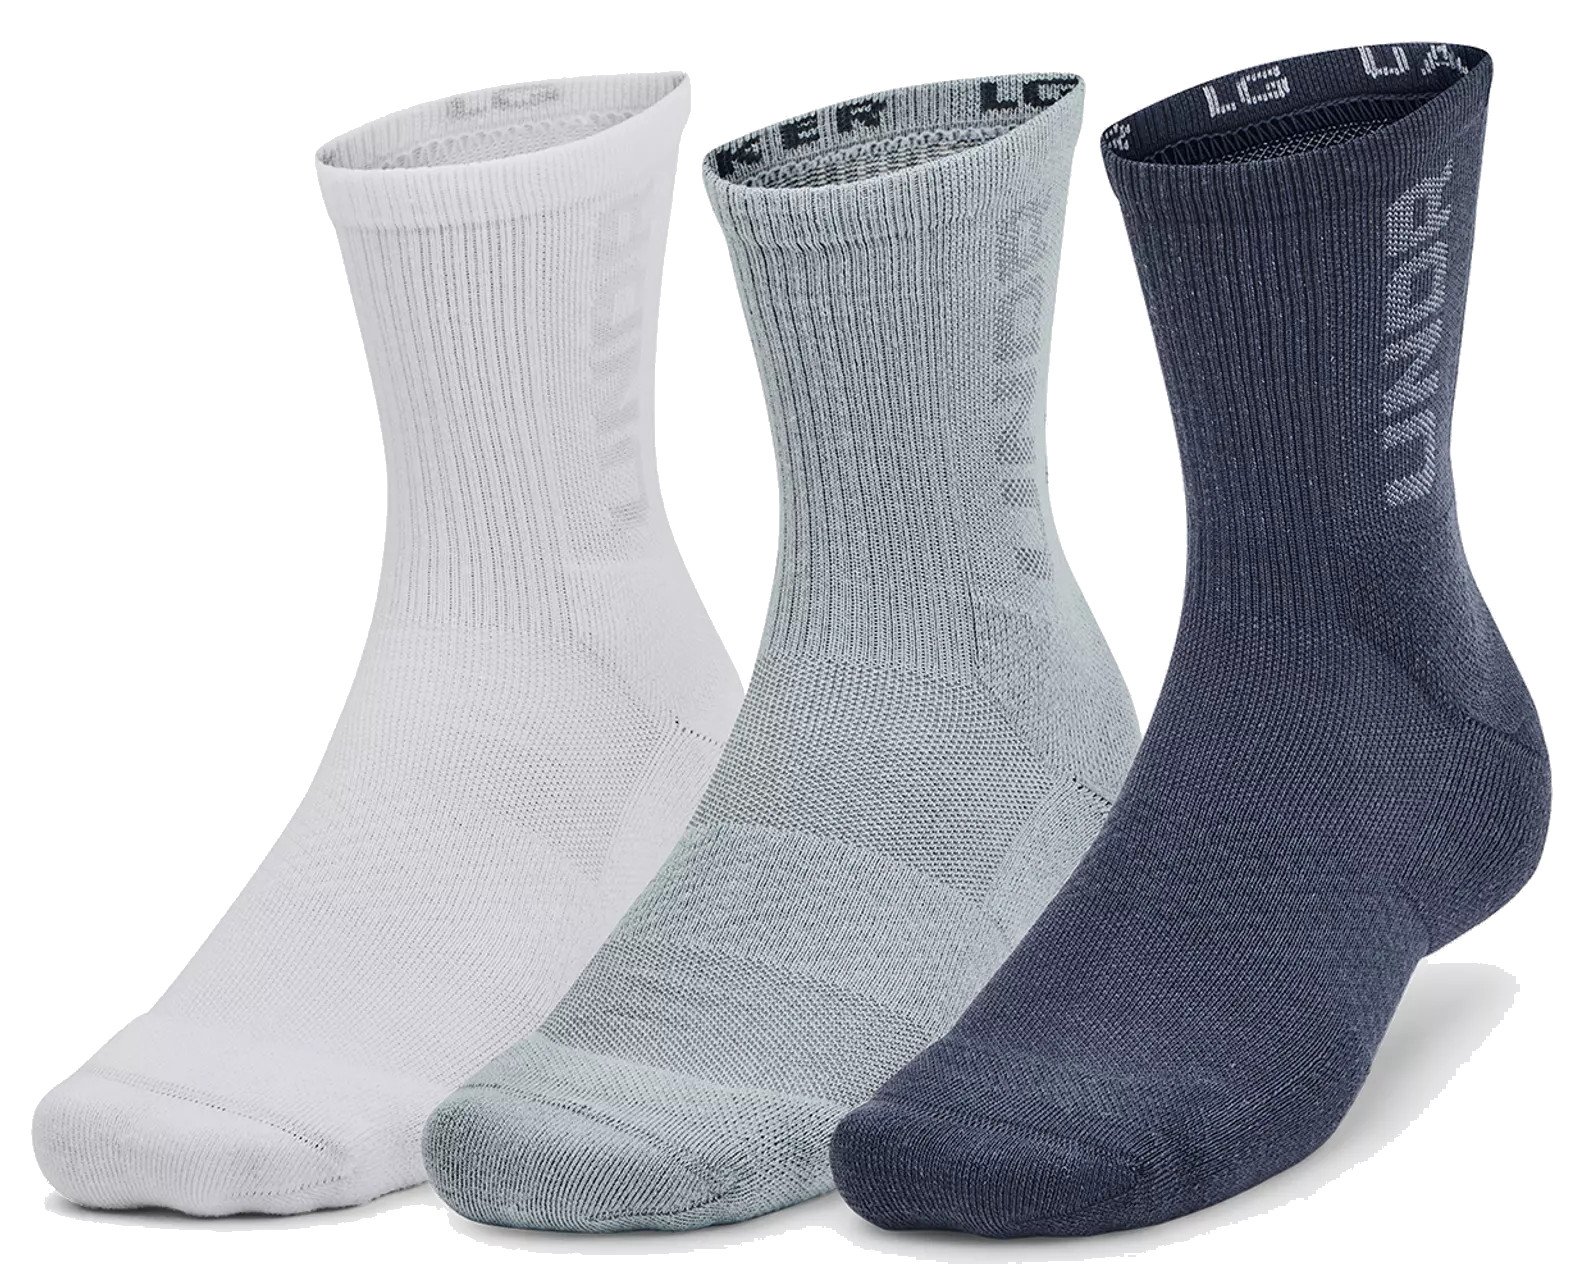 3-Maker Mid Socks 3-pack